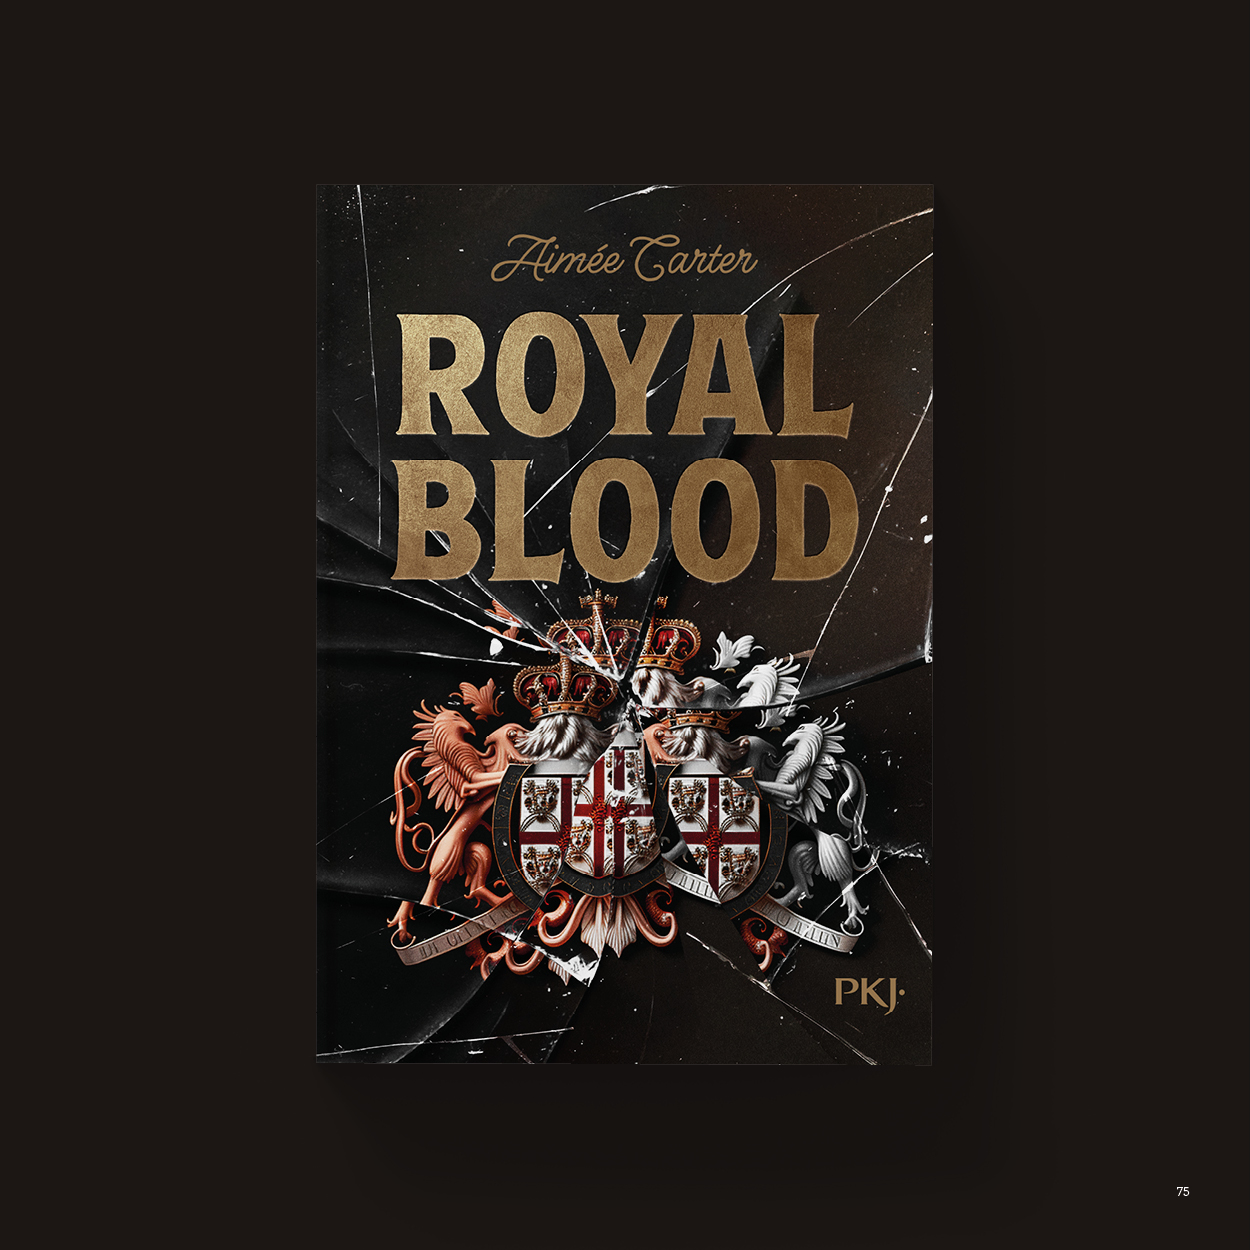 Vue_Royal_blood_75